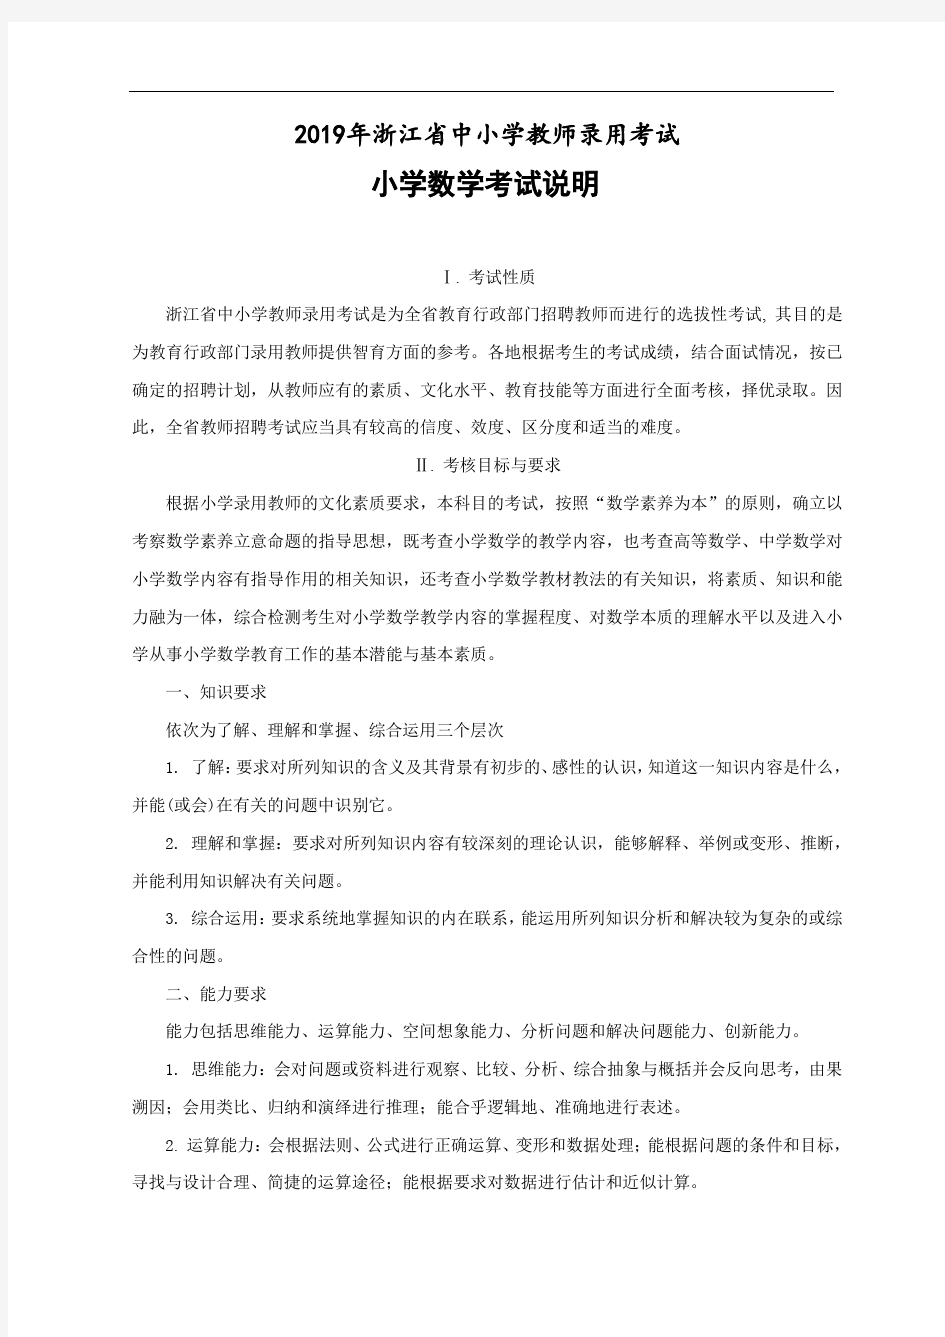 2019年浙江省中小学教师录用考试小学数学考试说明